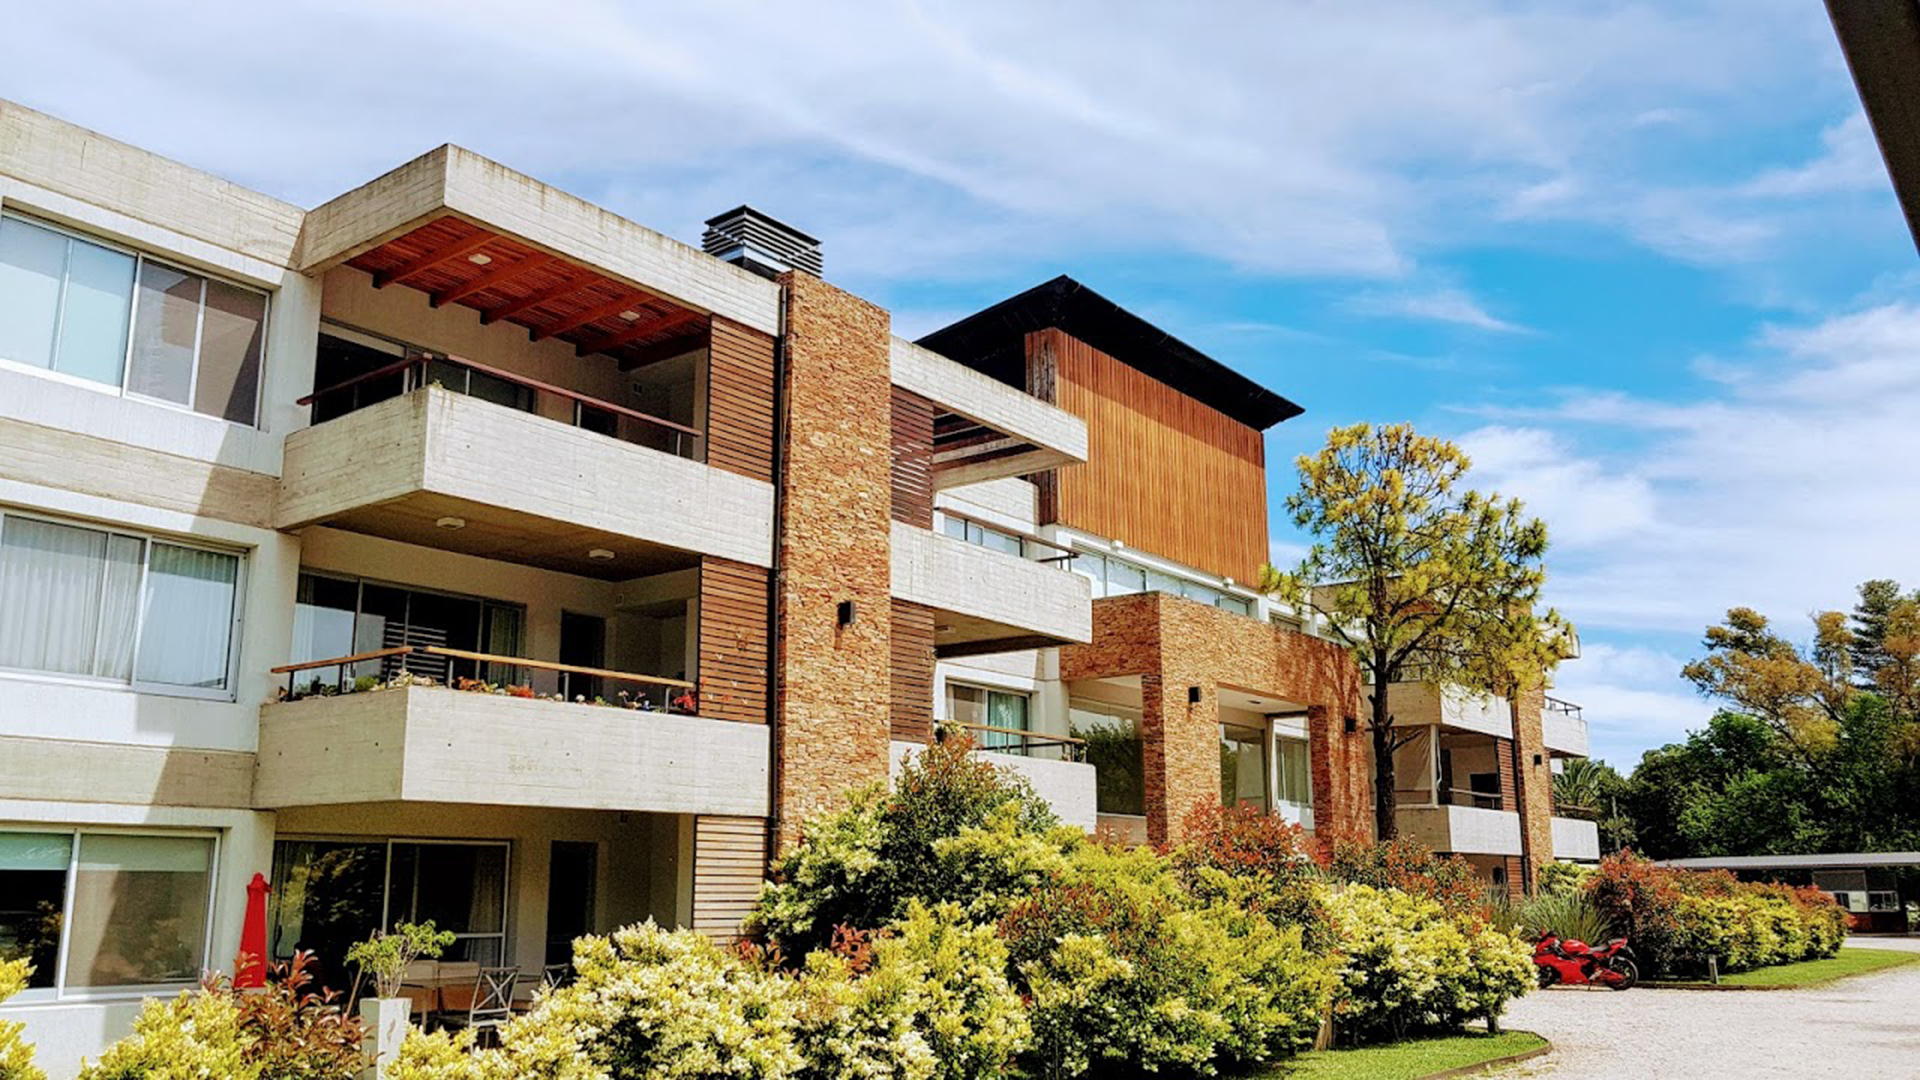 La demanda busca viviendas con jardín y los dúplex con balcones amplios y luminosos